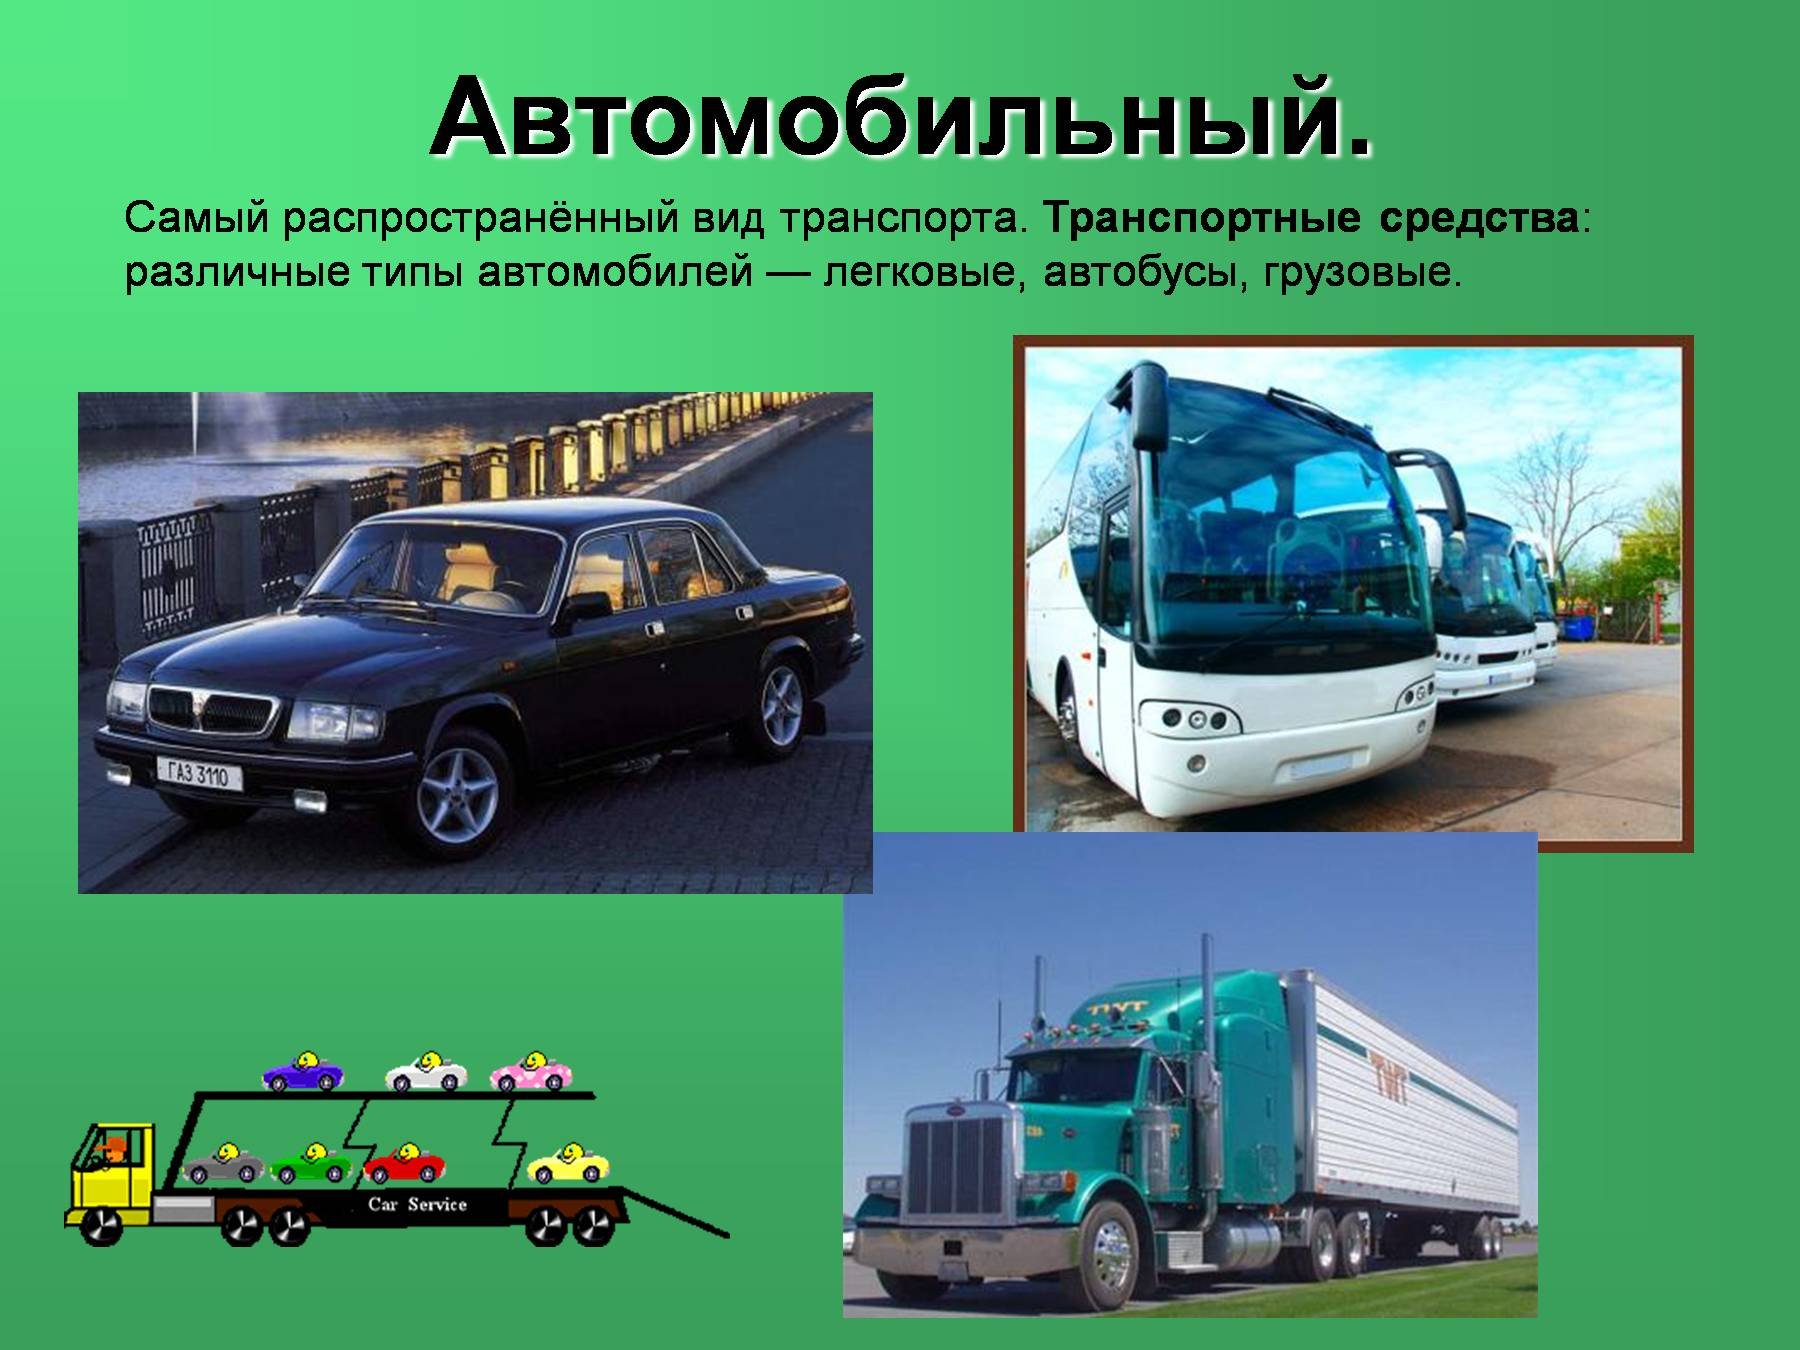 Любых транспортных средств автомобилей. Виды автомобильного транспорта. Транспортные средства. Виды транспорта автомобиль. Автомобильный транспорт слайд.